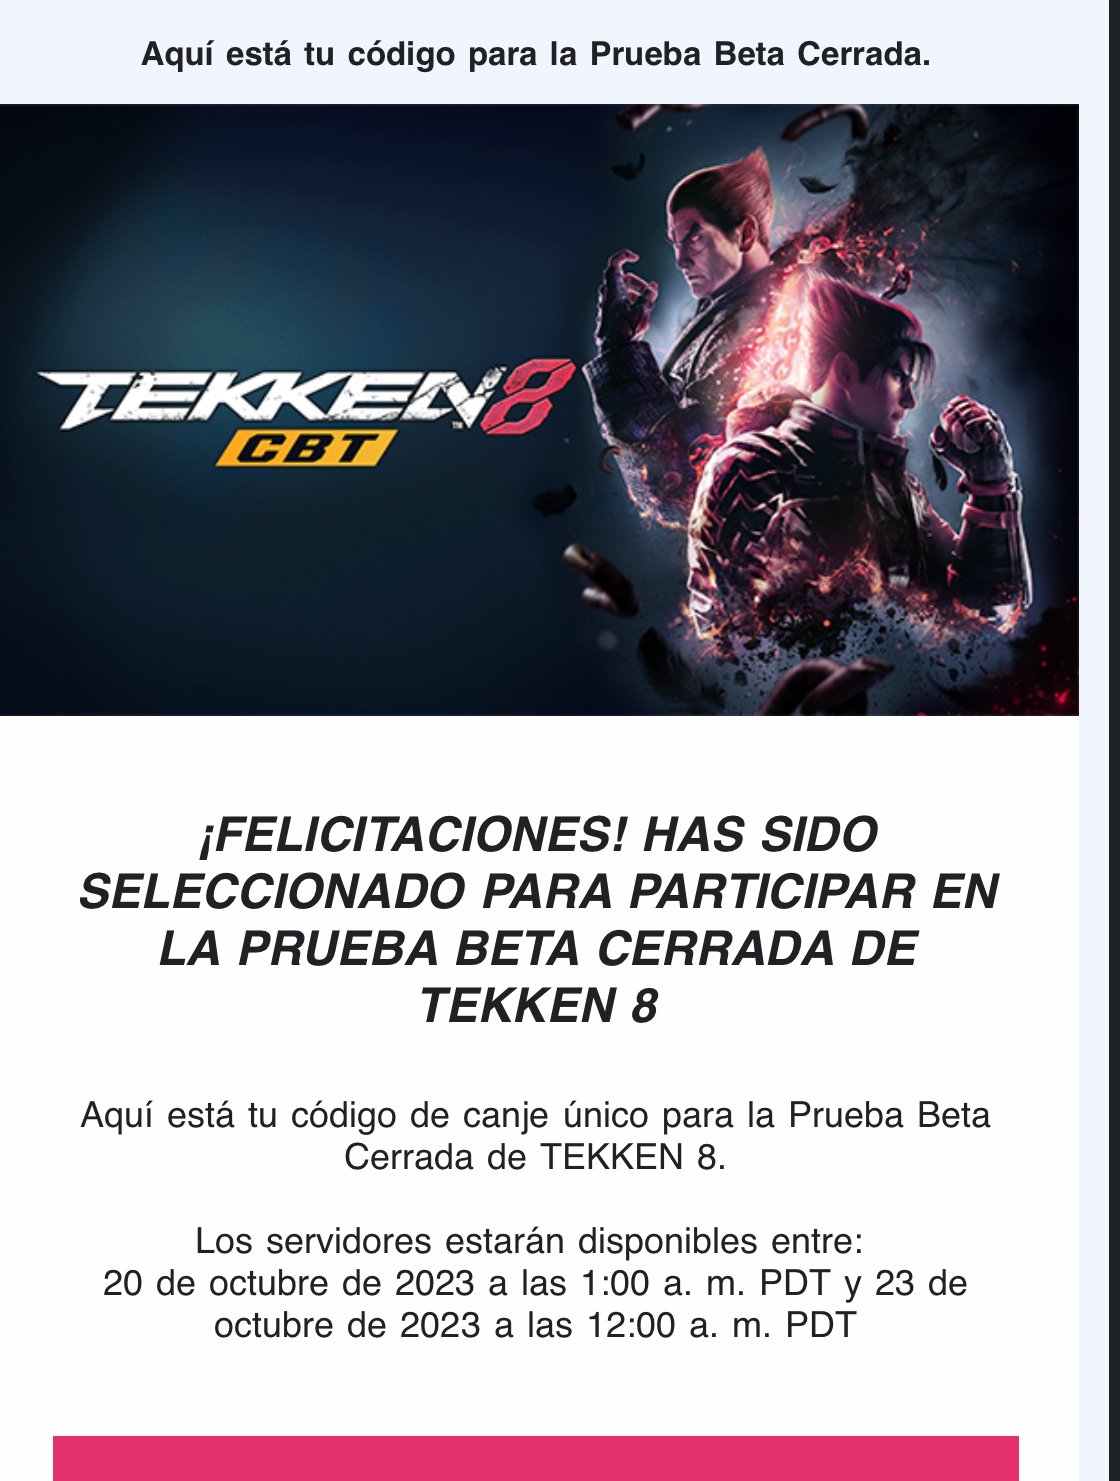 How to get a Tekken 8 beta code